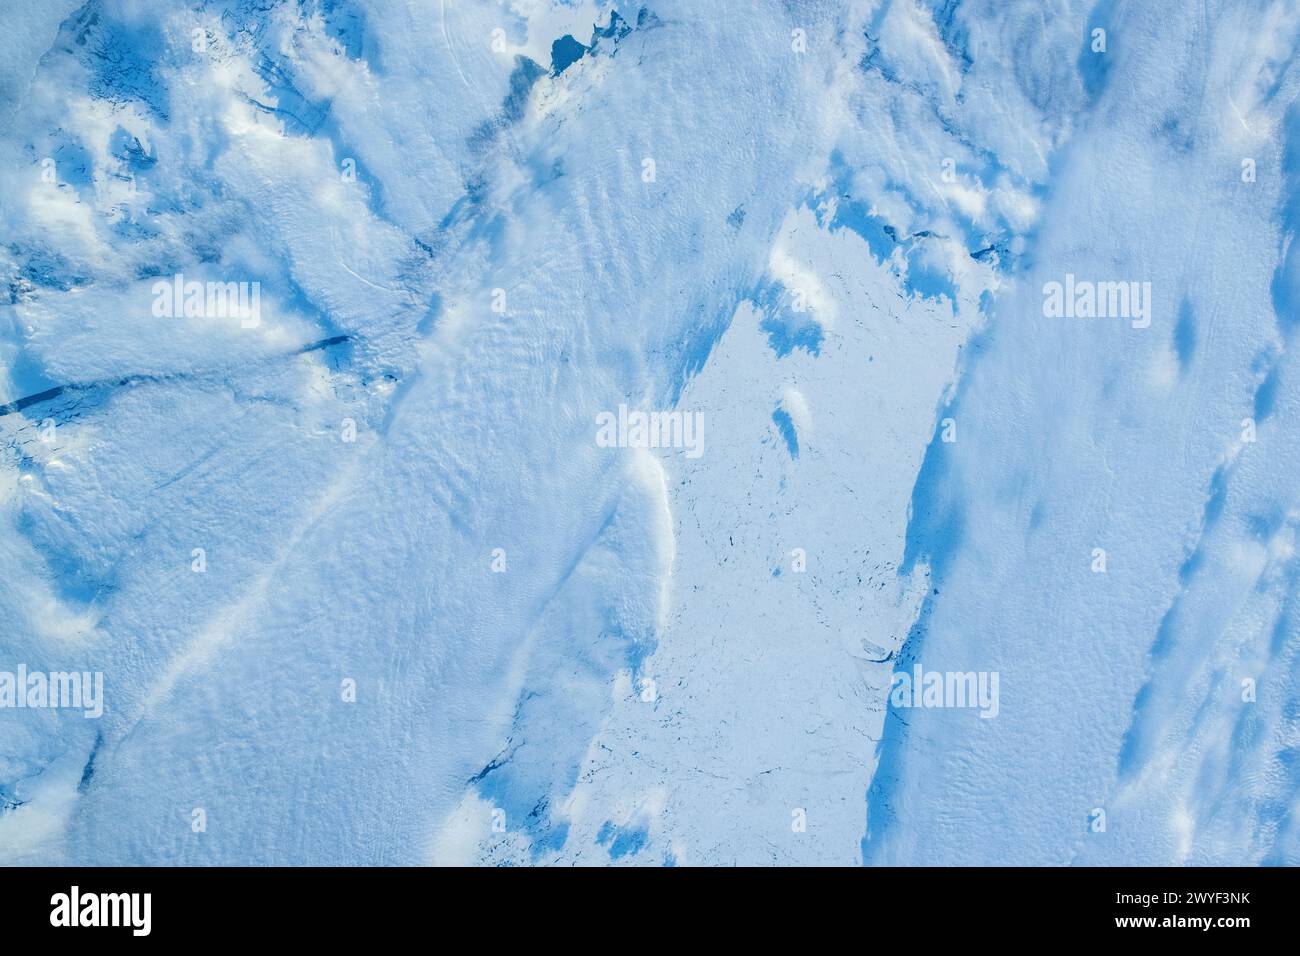 Eisschneedecke in der Nähe von James Bay, Kanada. Digitale Verbesserung eines von der NASA bereitgestellten Bildes Stockfoto